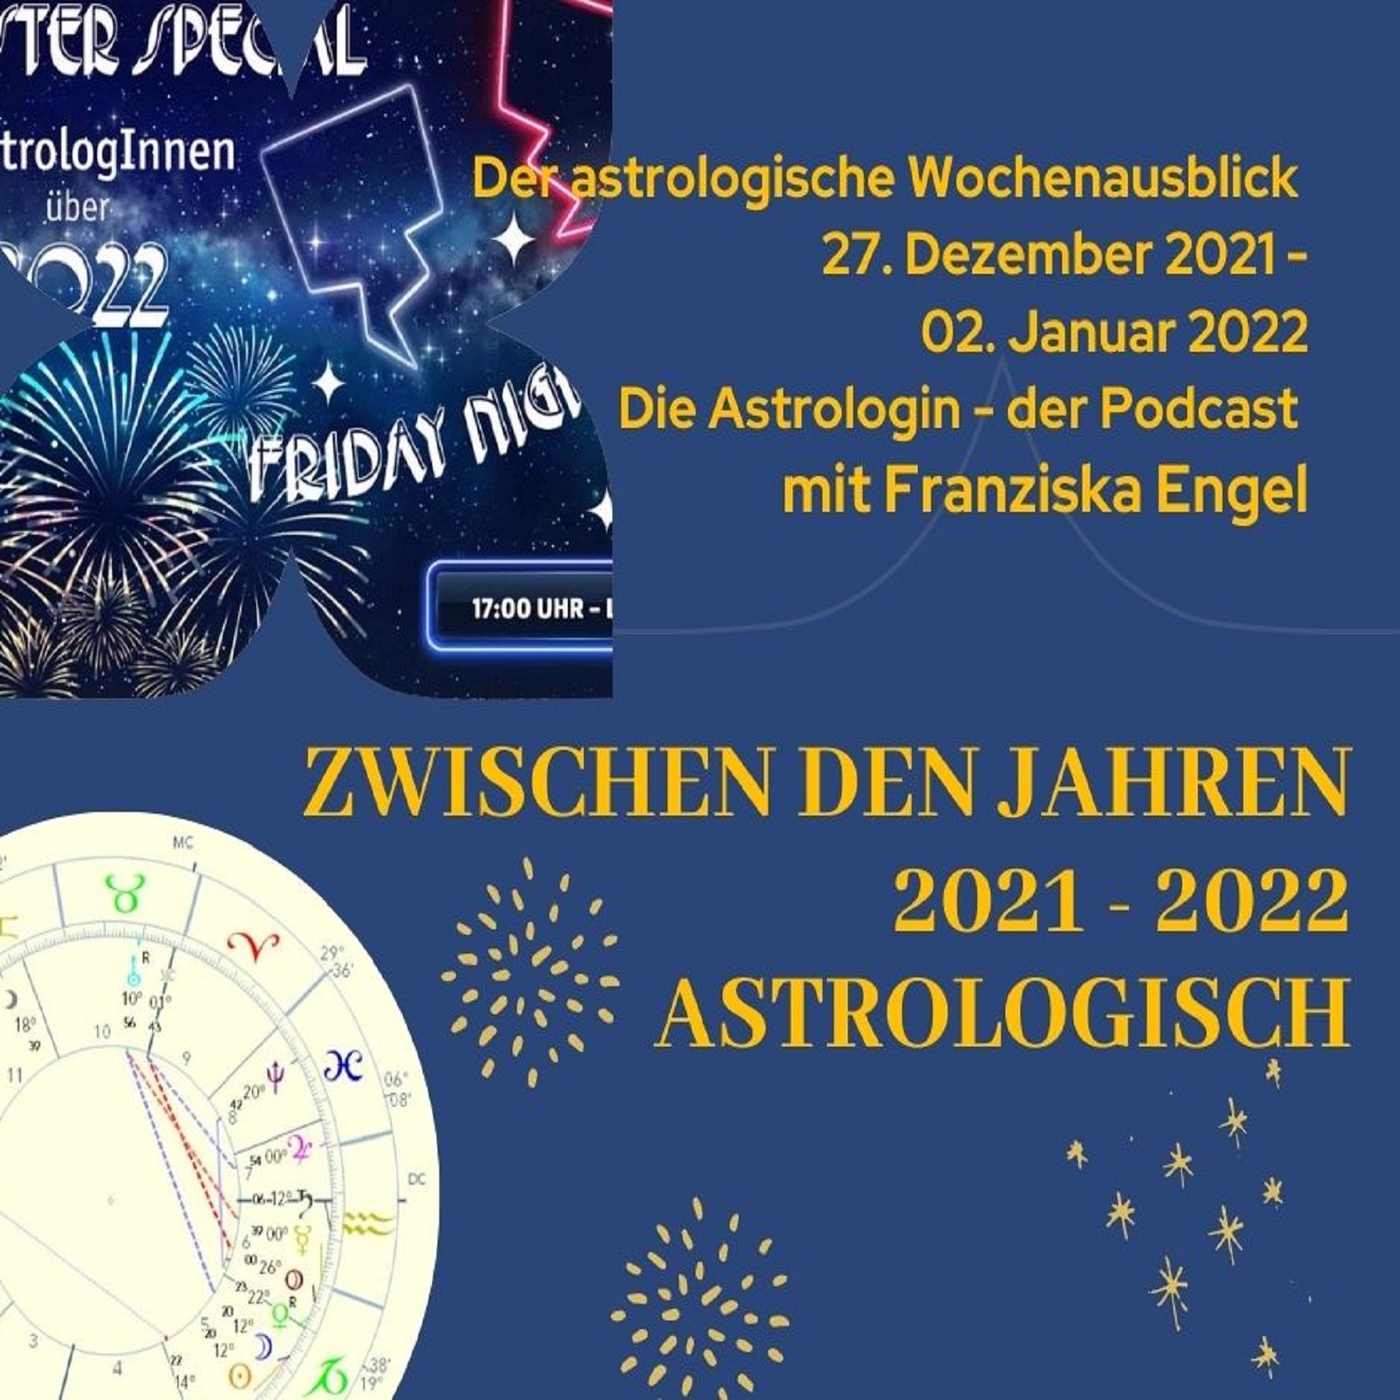 Zwischen den Jahren 2021 - 2022 astrologisch